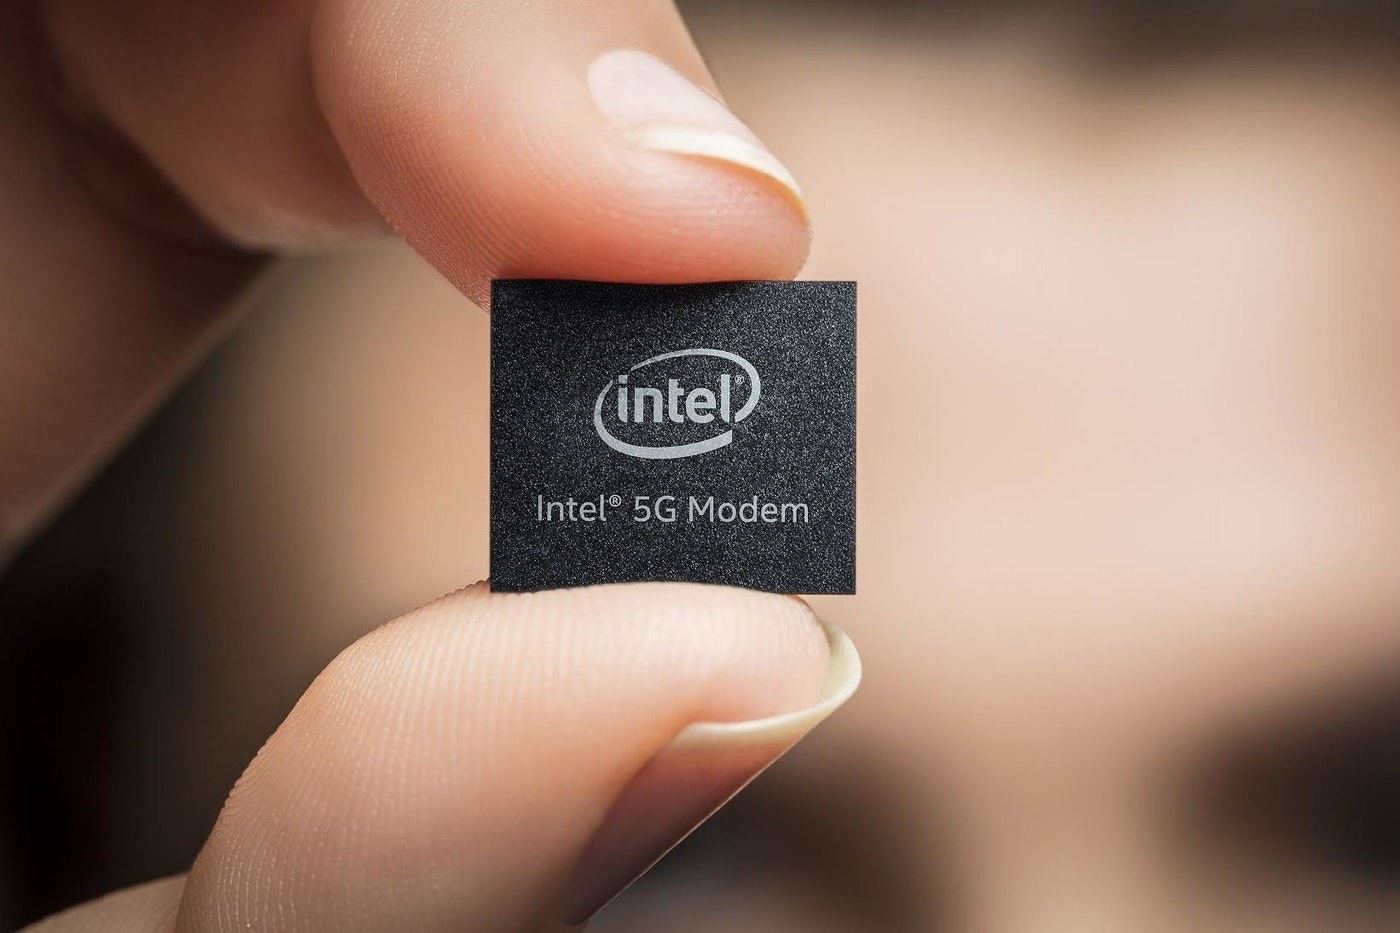 照片中提到了(intel)、Intel 5G Modem，跟英特爾有關，包含了iphone英特爾芯片、蘋果、集成電路、調製解調器